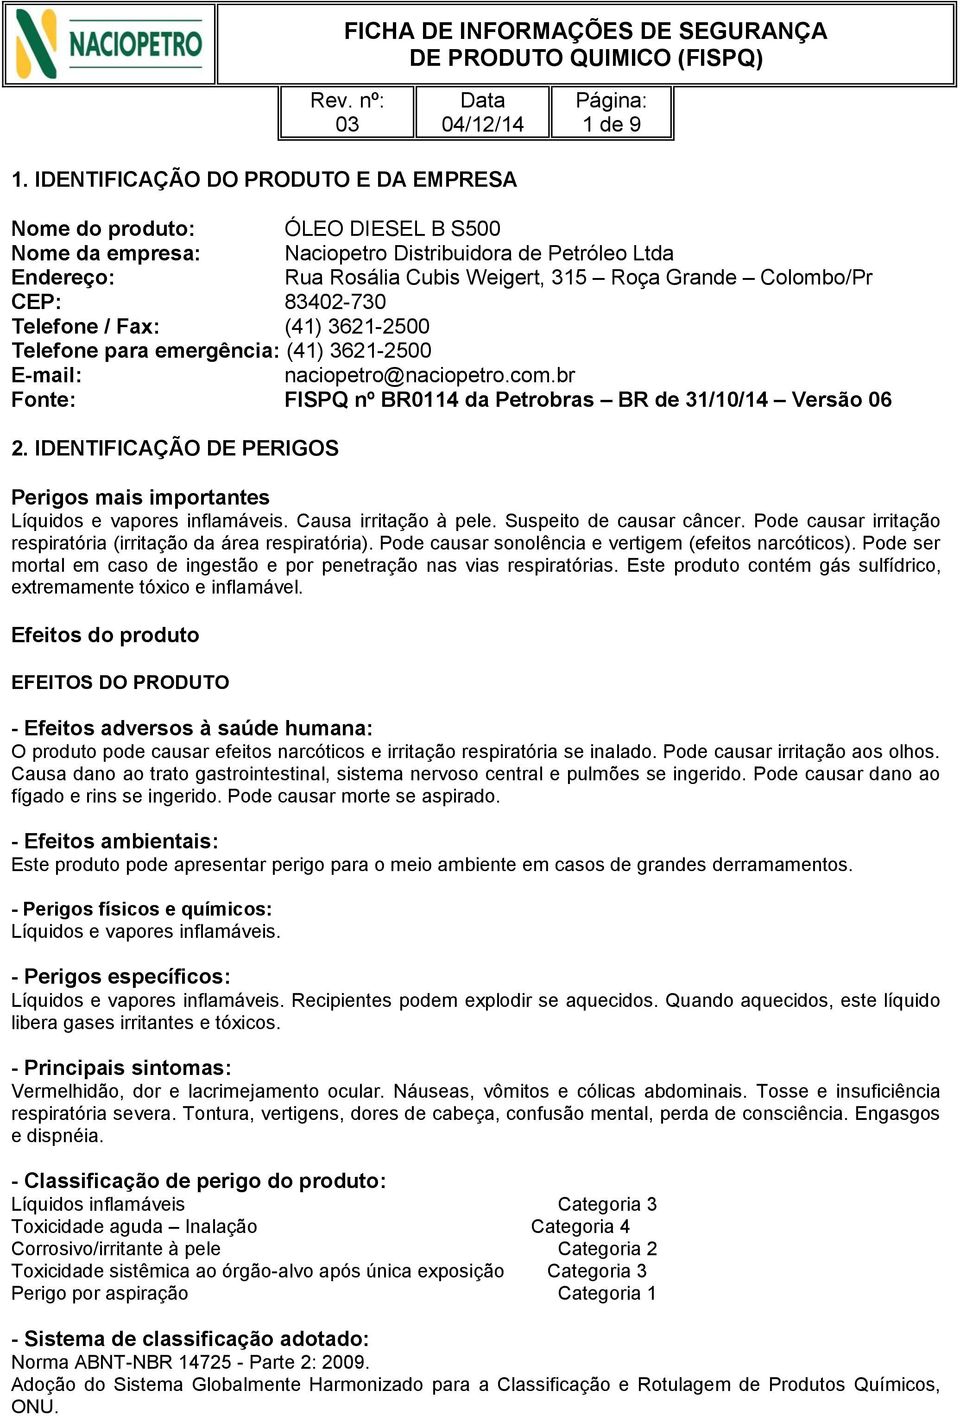 CEP: 83402-730 Telefone / Fax: (41) 3621-2500 Telefone para emergência: (41) 3621-2500 E-mail: naciopetro@naciopetro.com.br Fonte: FISPQ nº BR0114 da Petrobras BR de 31/10/14 Versão 06 2.